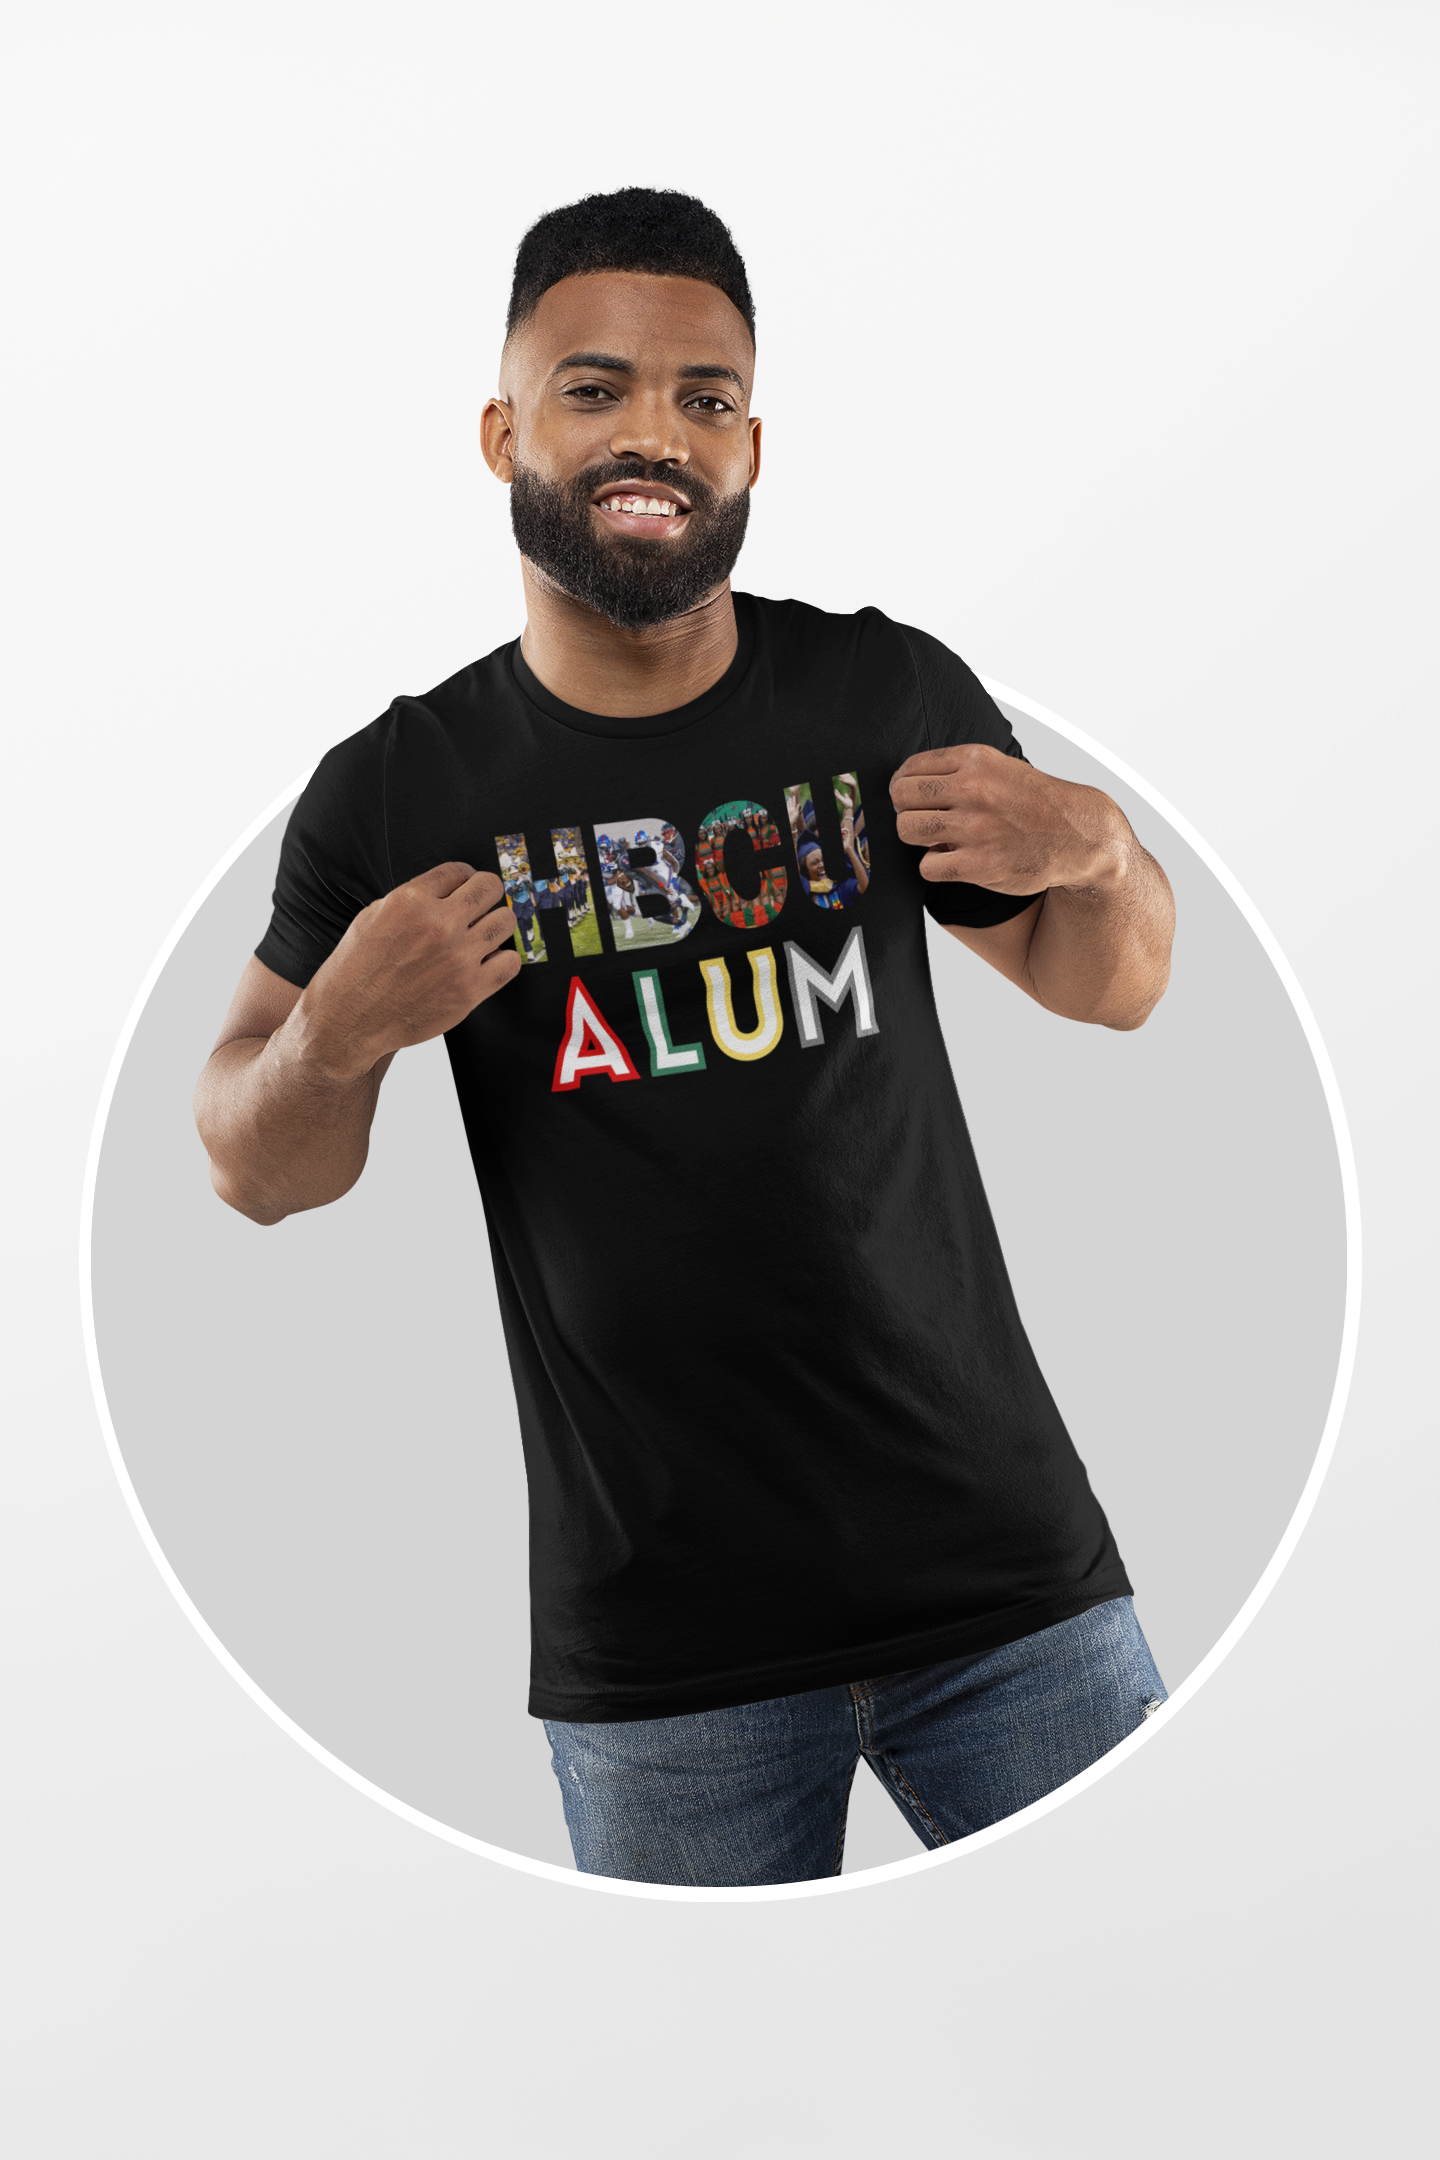 HBCU ALUM Men's T-Shirt - HBCU Shirts, HBCU Apparel, Black Colleges, HBCU Alumni